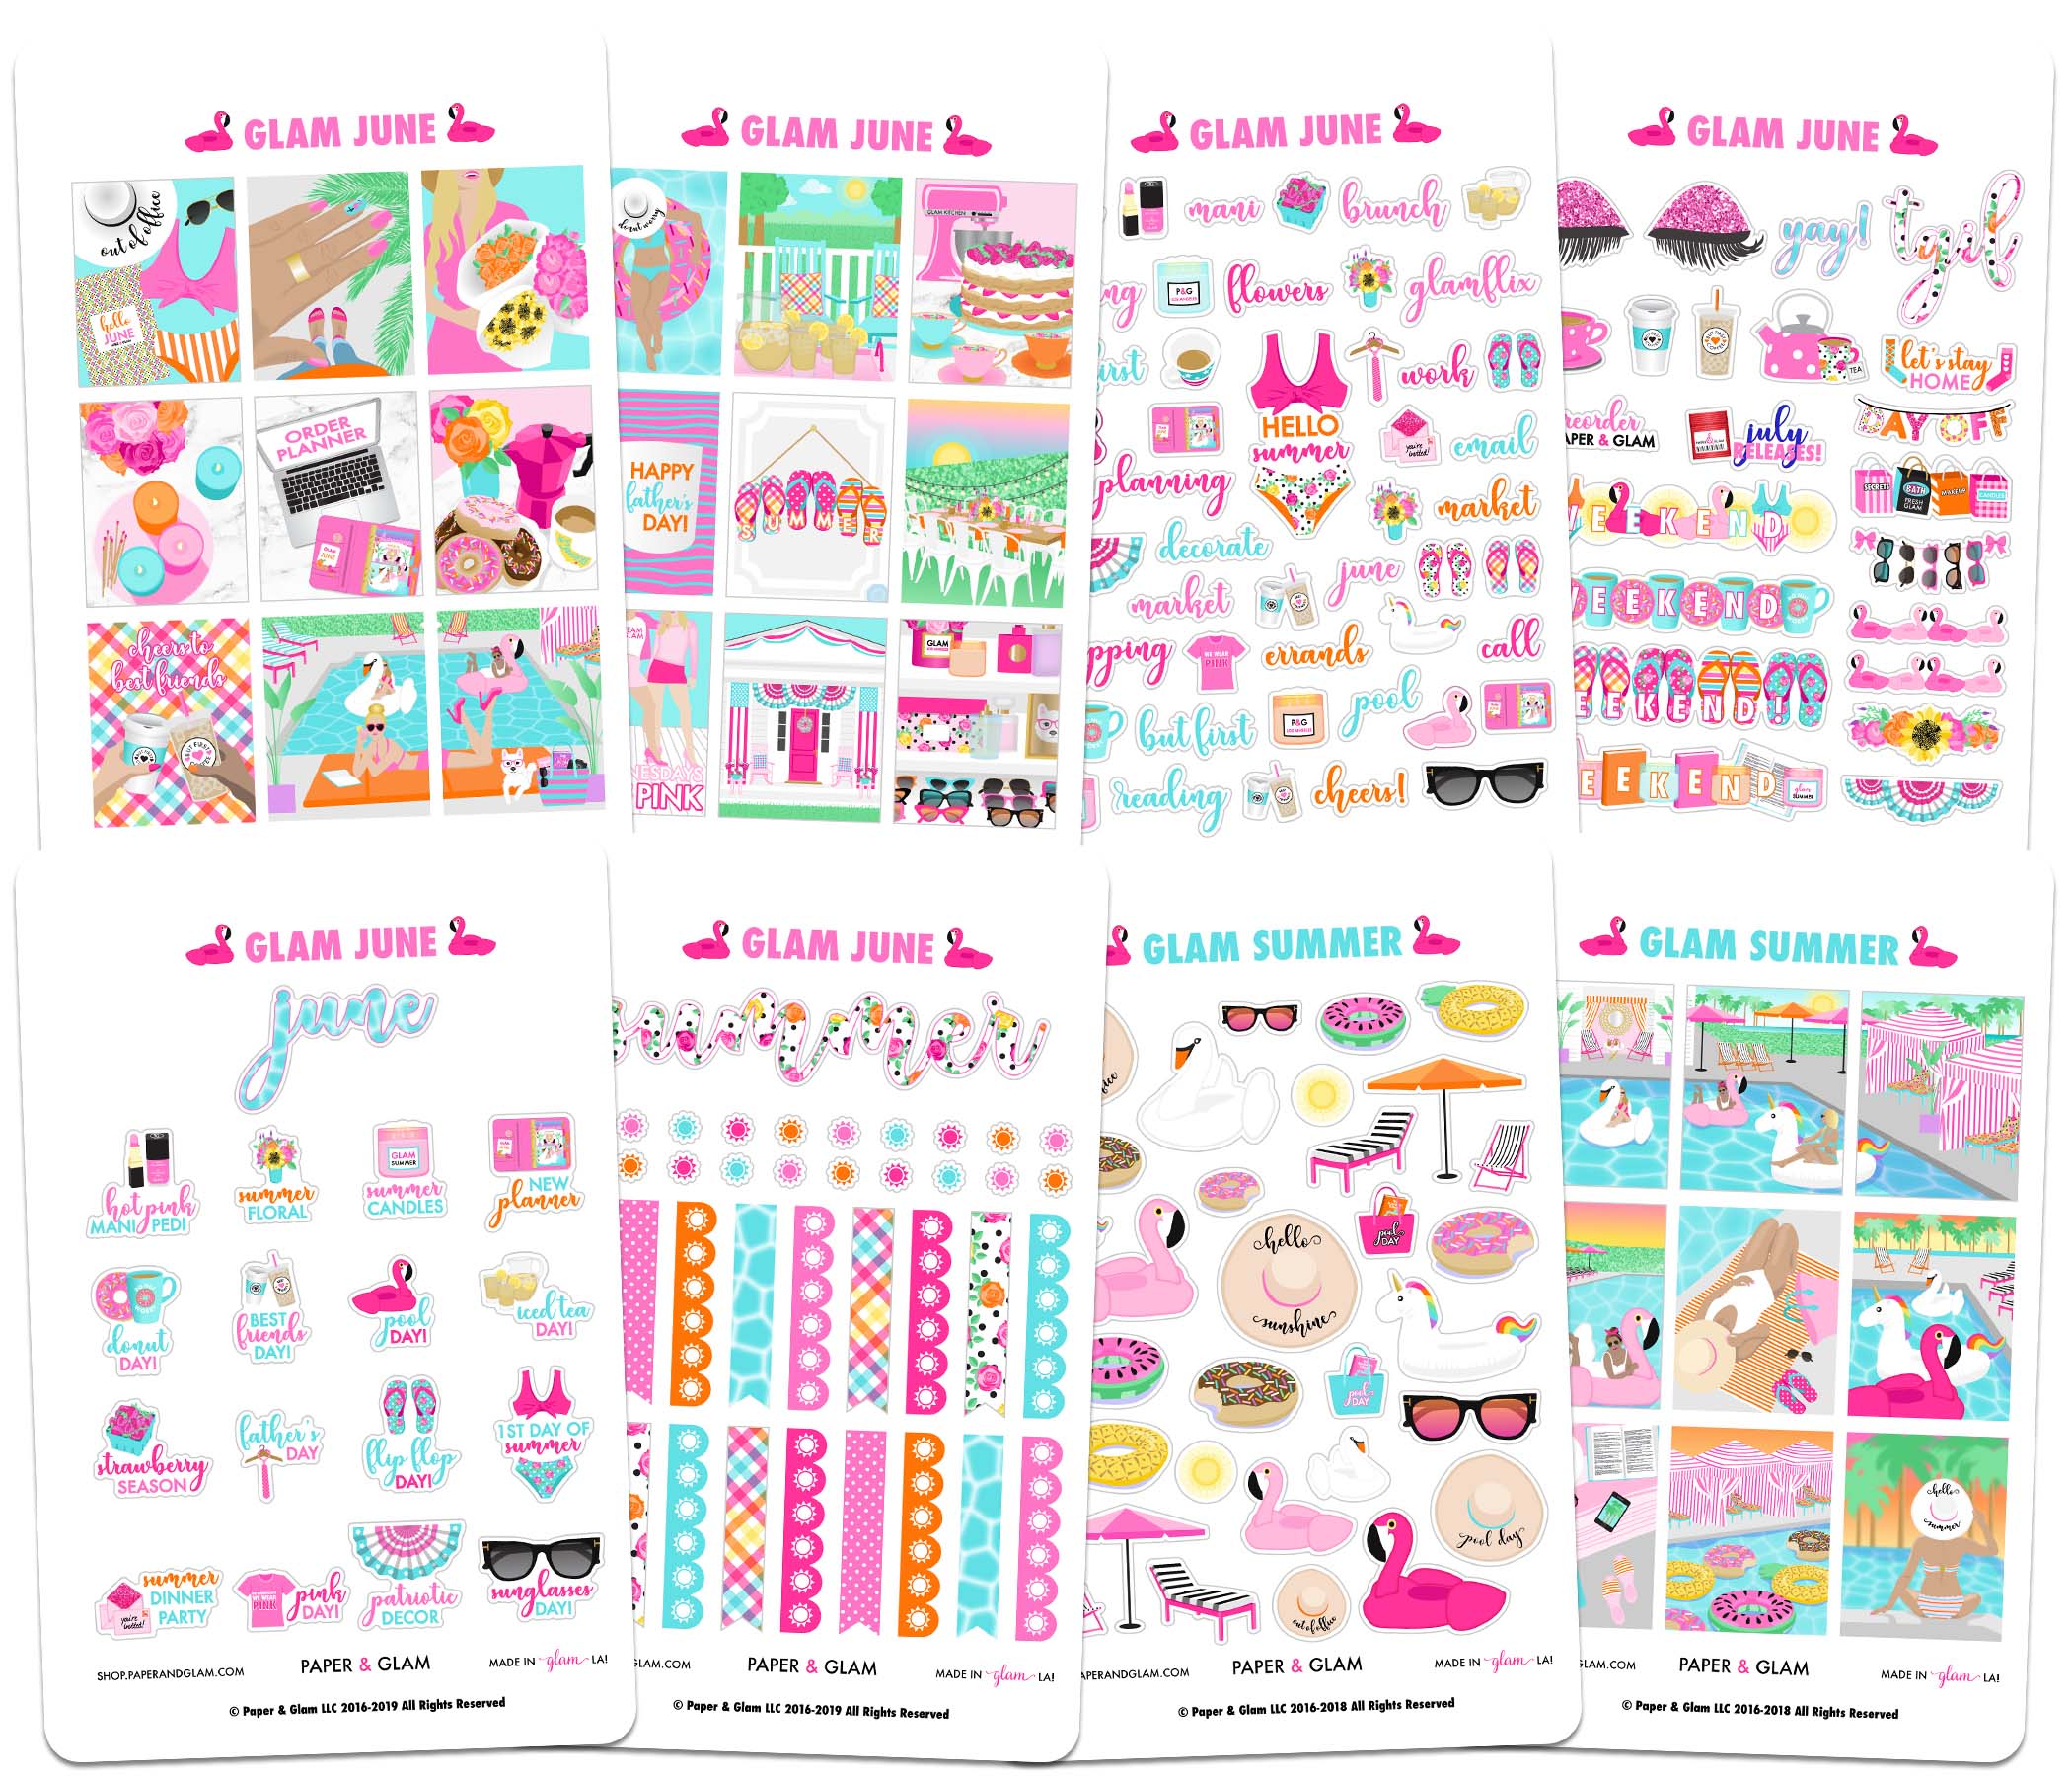 Glam June Planner Kit – Paper & Glam